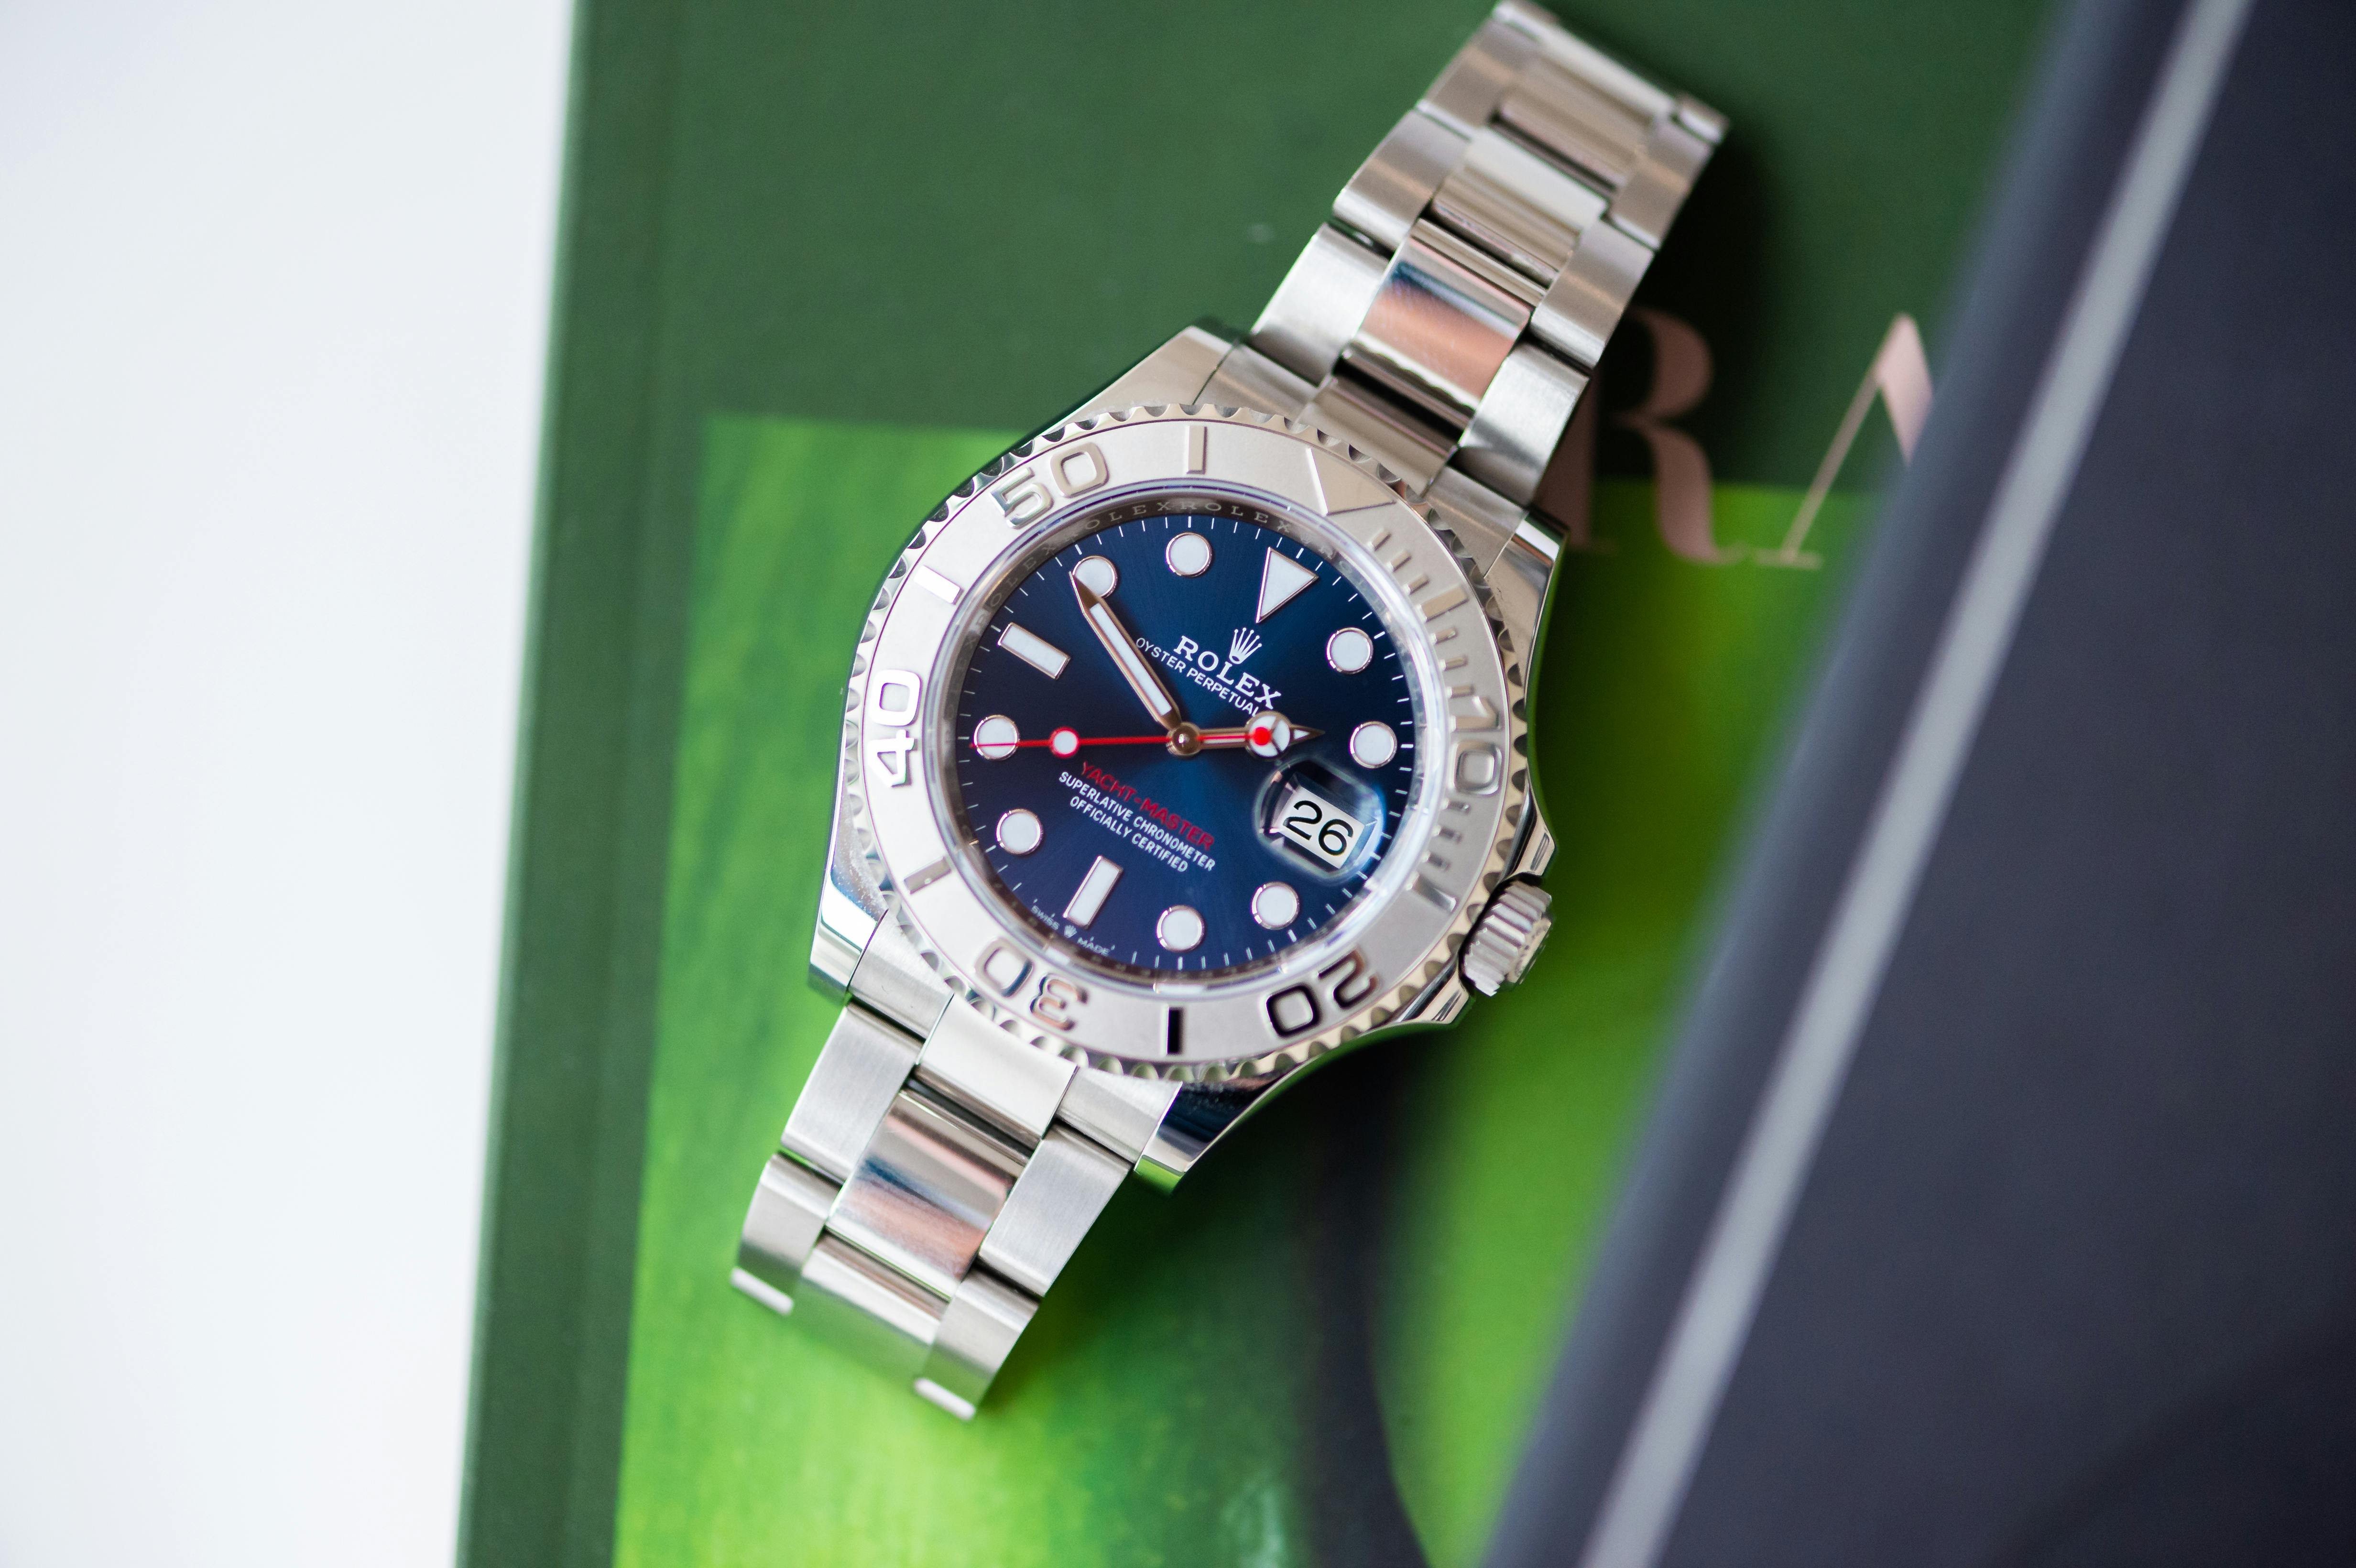 Rolex Steel and Platinum Yacht-Master 40 Watch - Dark Rhodium Dial - 3235  Movement - 126622 blu